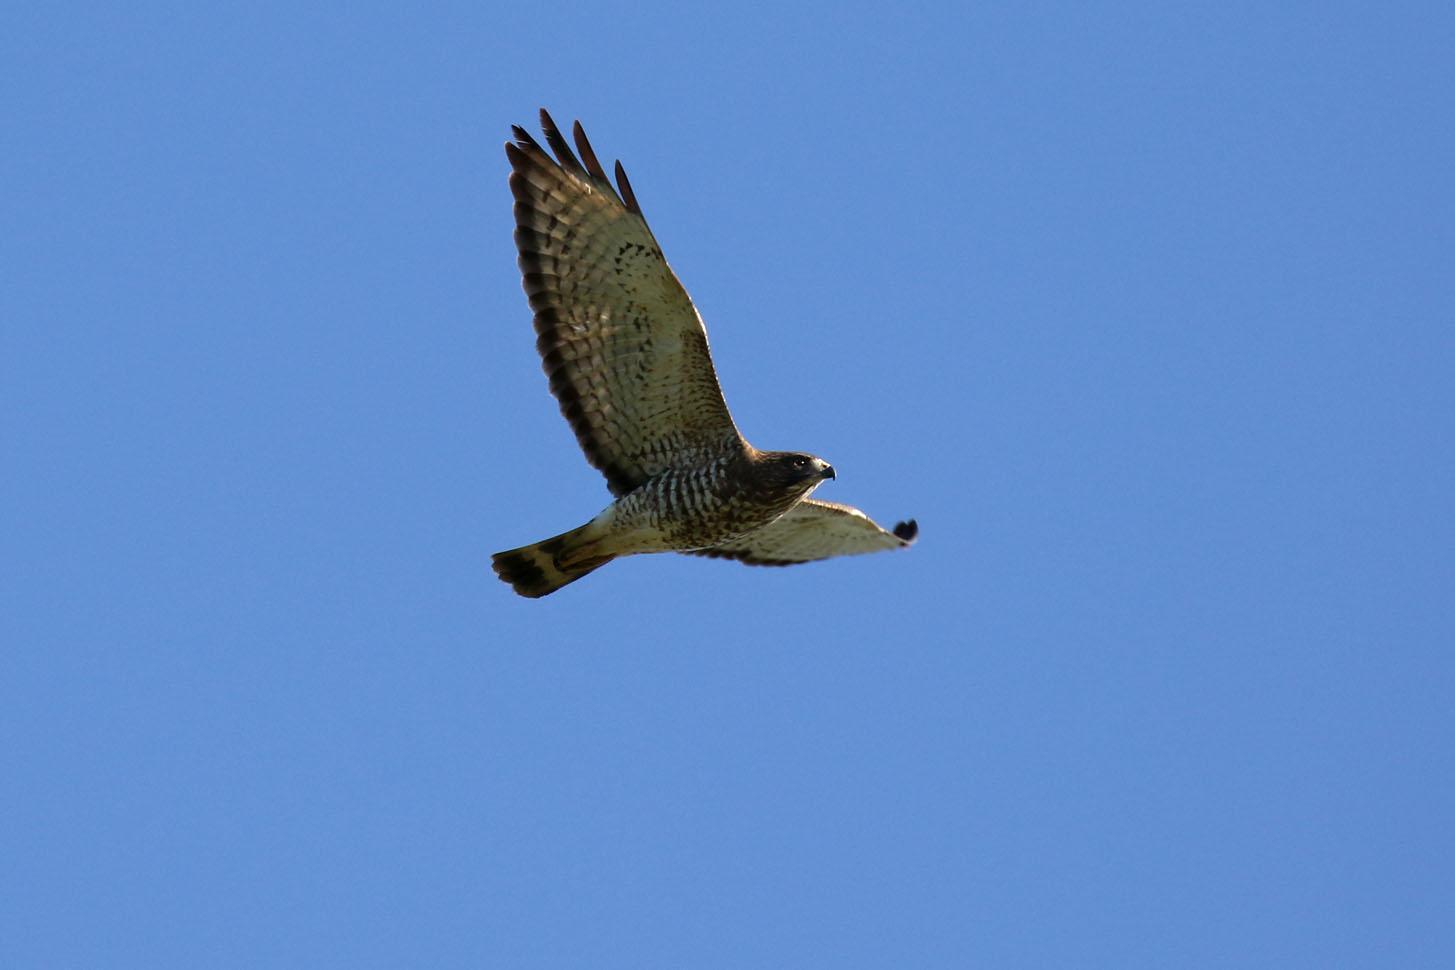 Broad-winged Hawk Photo by Kristy Baker